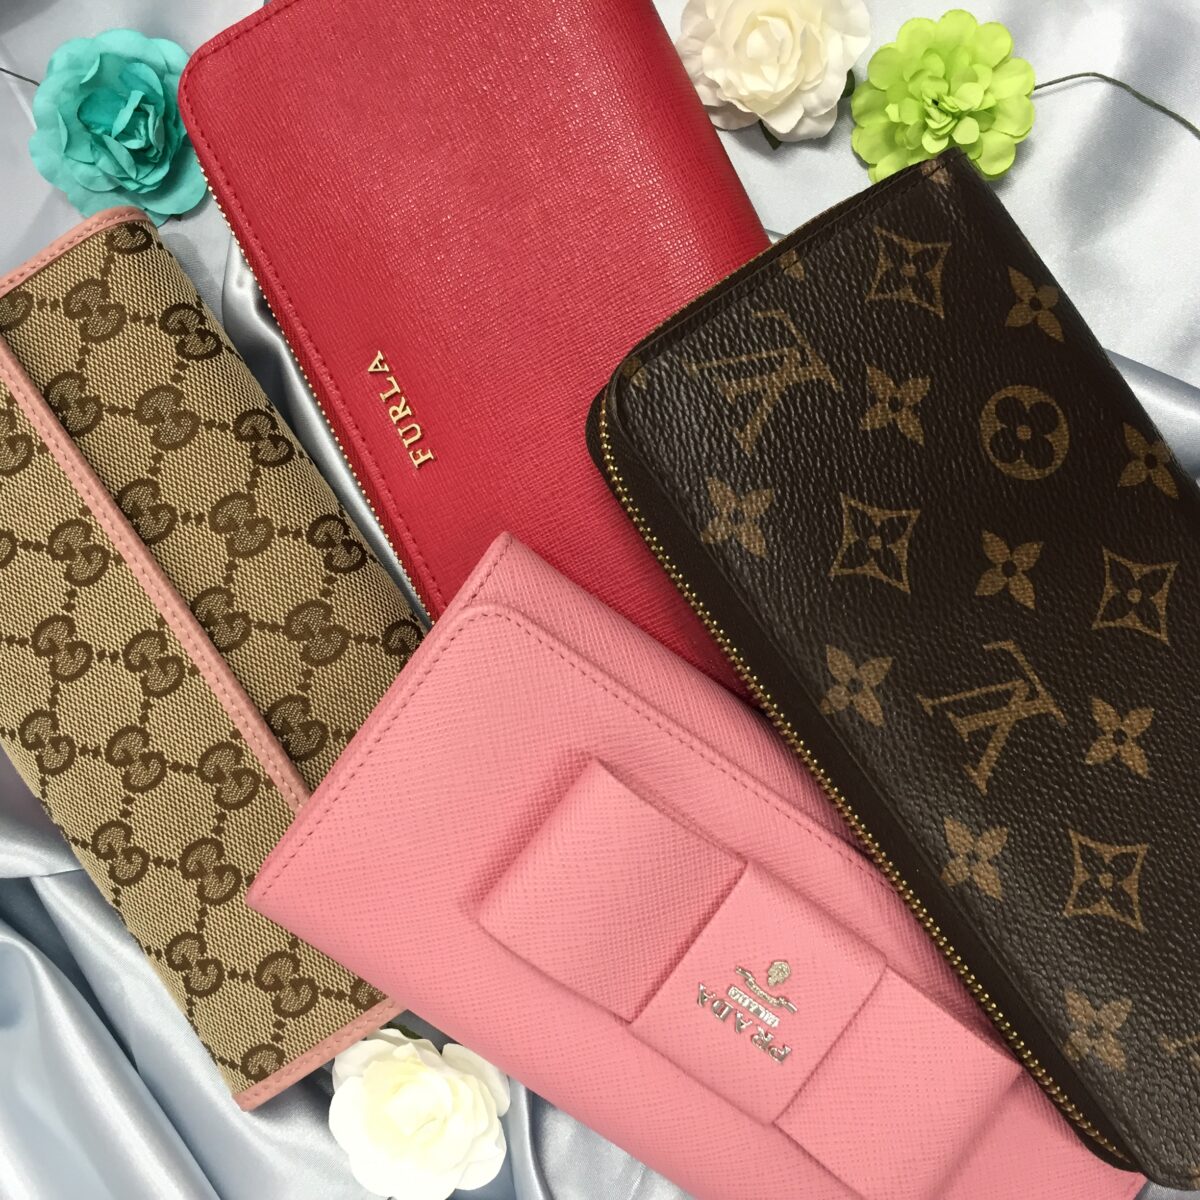 2019.9.15 ピンクの財布